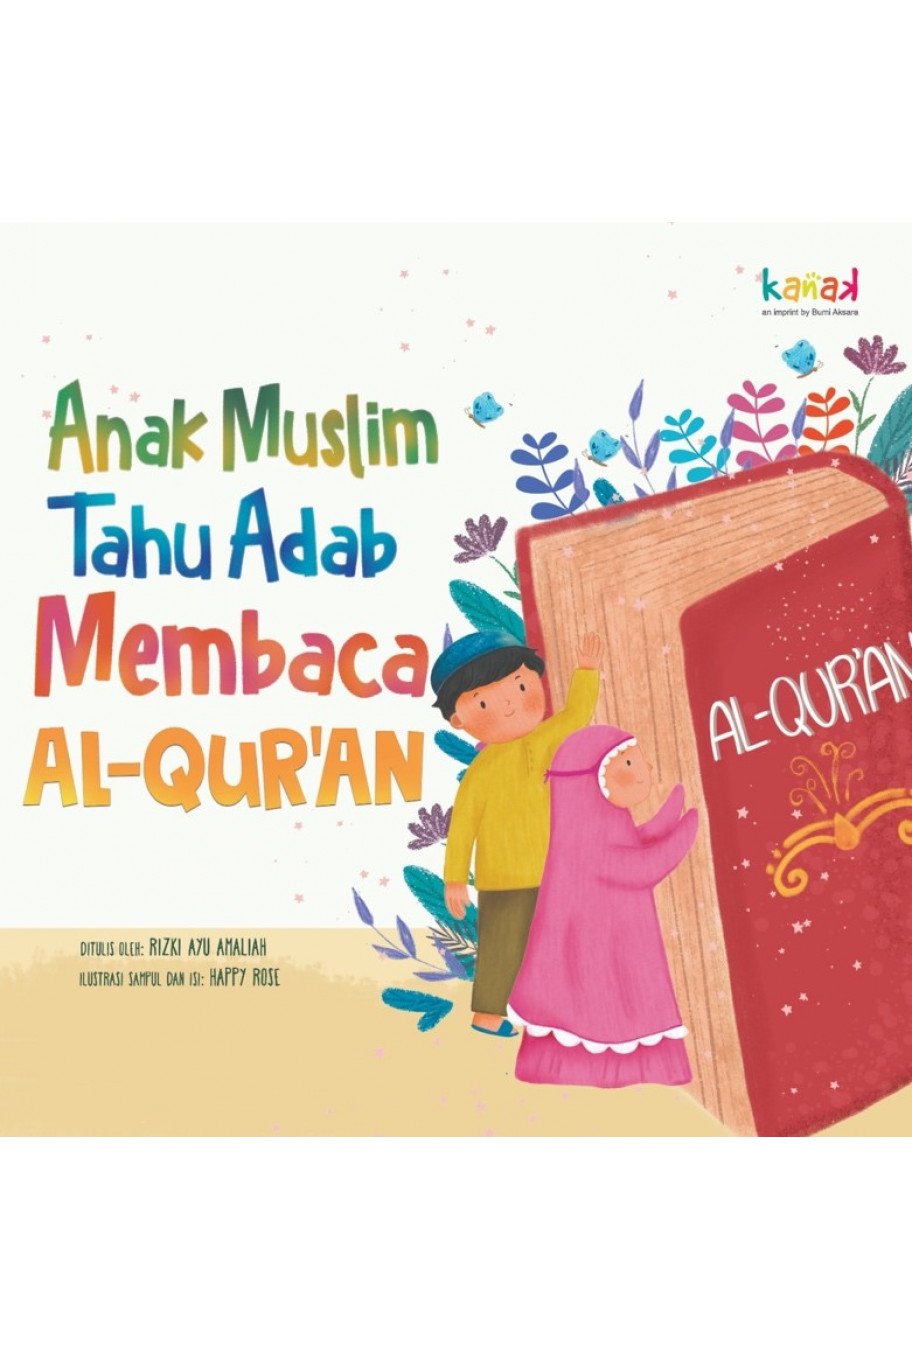 Anak Muslim Tahu Adab Membaca Al-Qur'an